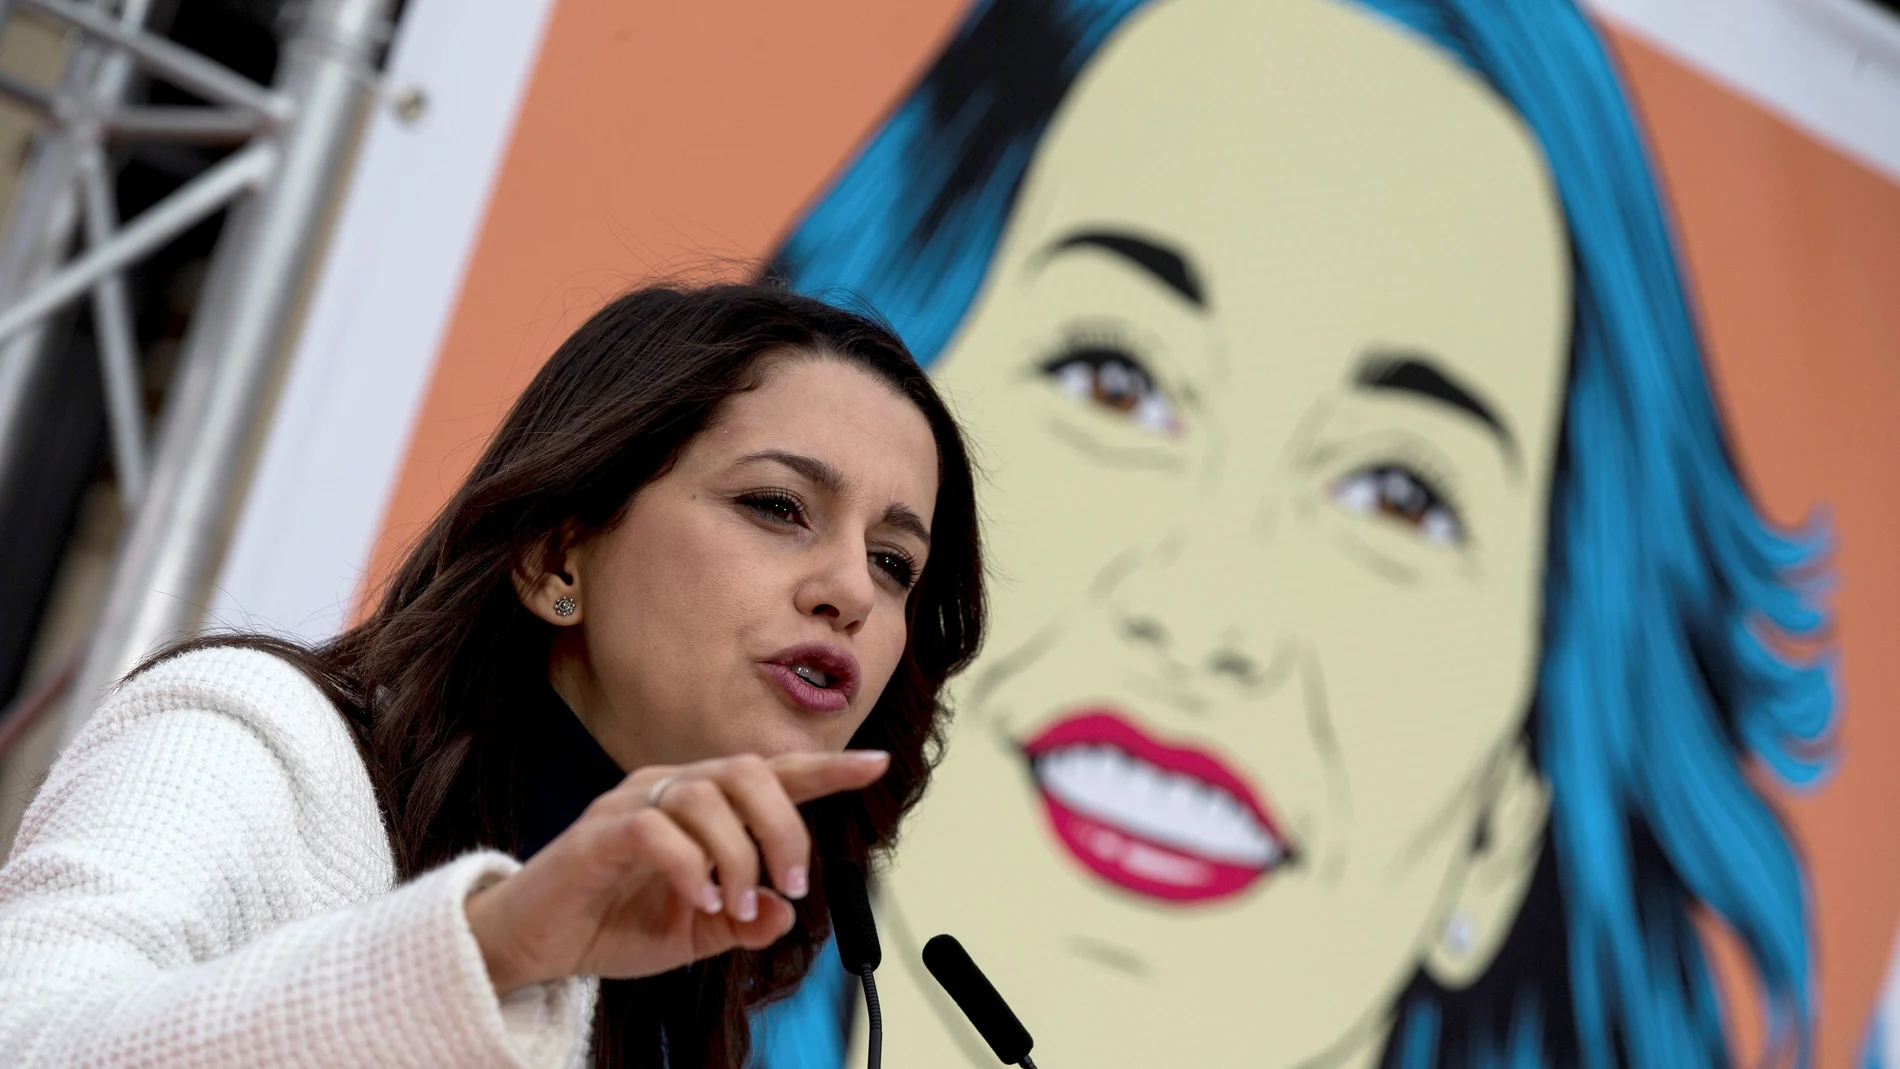 La candidata de Ciudadanos a la presidencia de la Generalitat, Inés Arrimadas